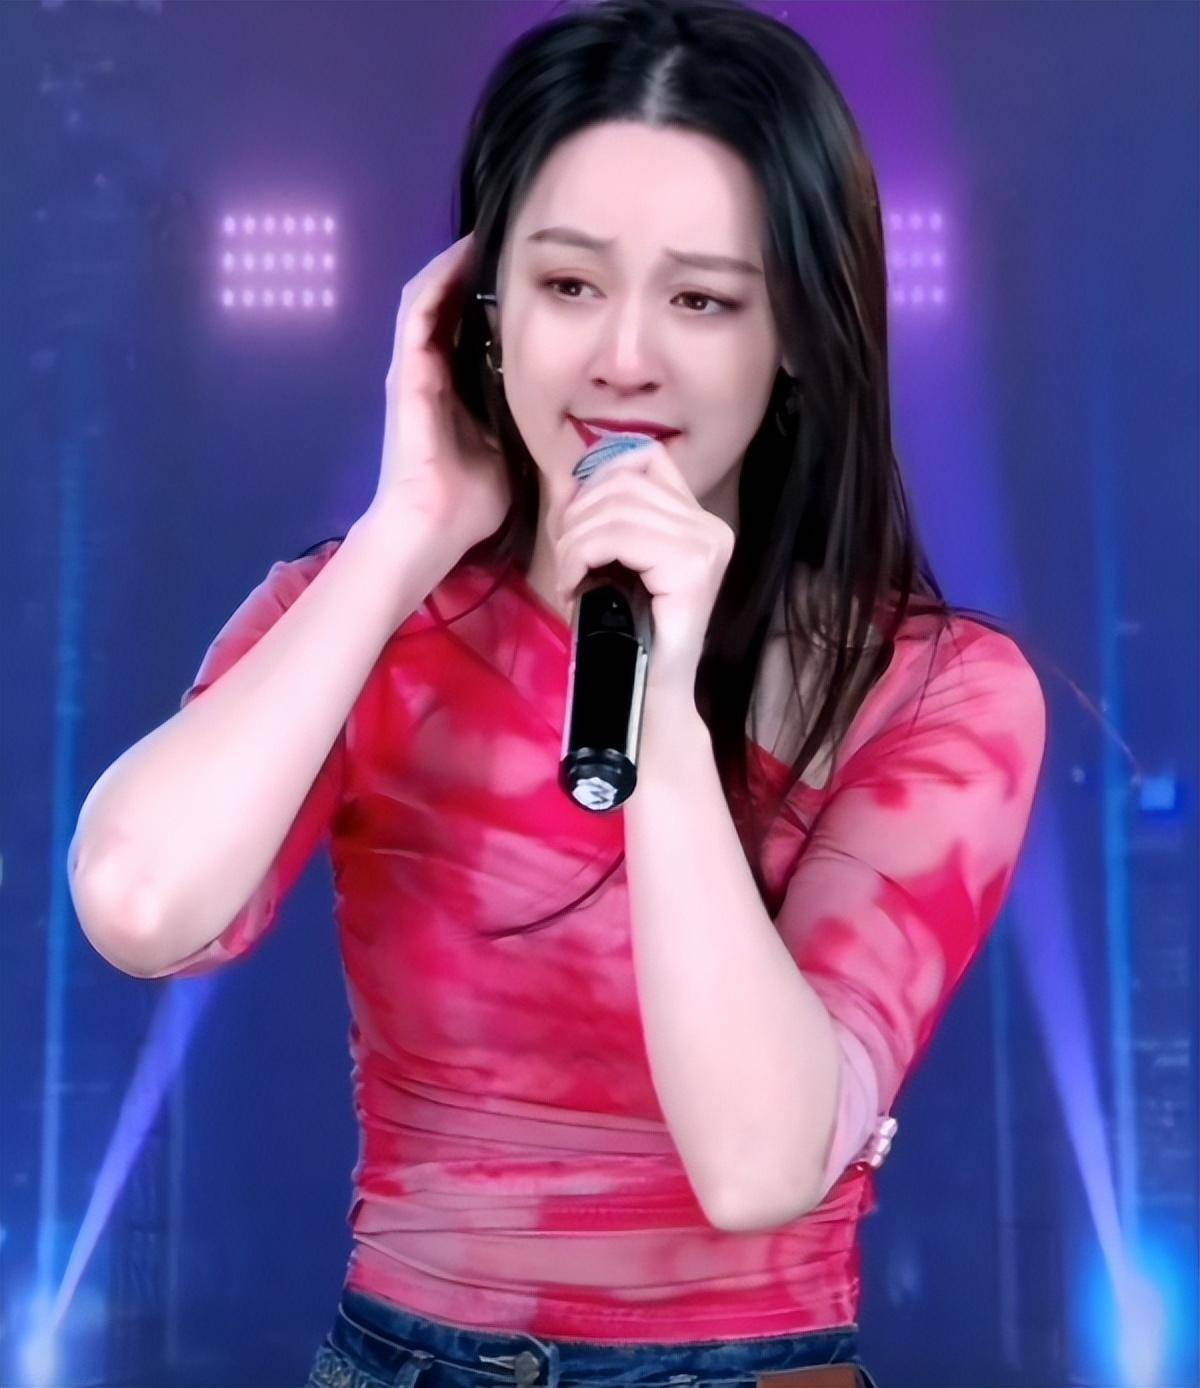 中国网红歌手唐艺靠着抖音一步步成长,前婆婆称她是好儿媳